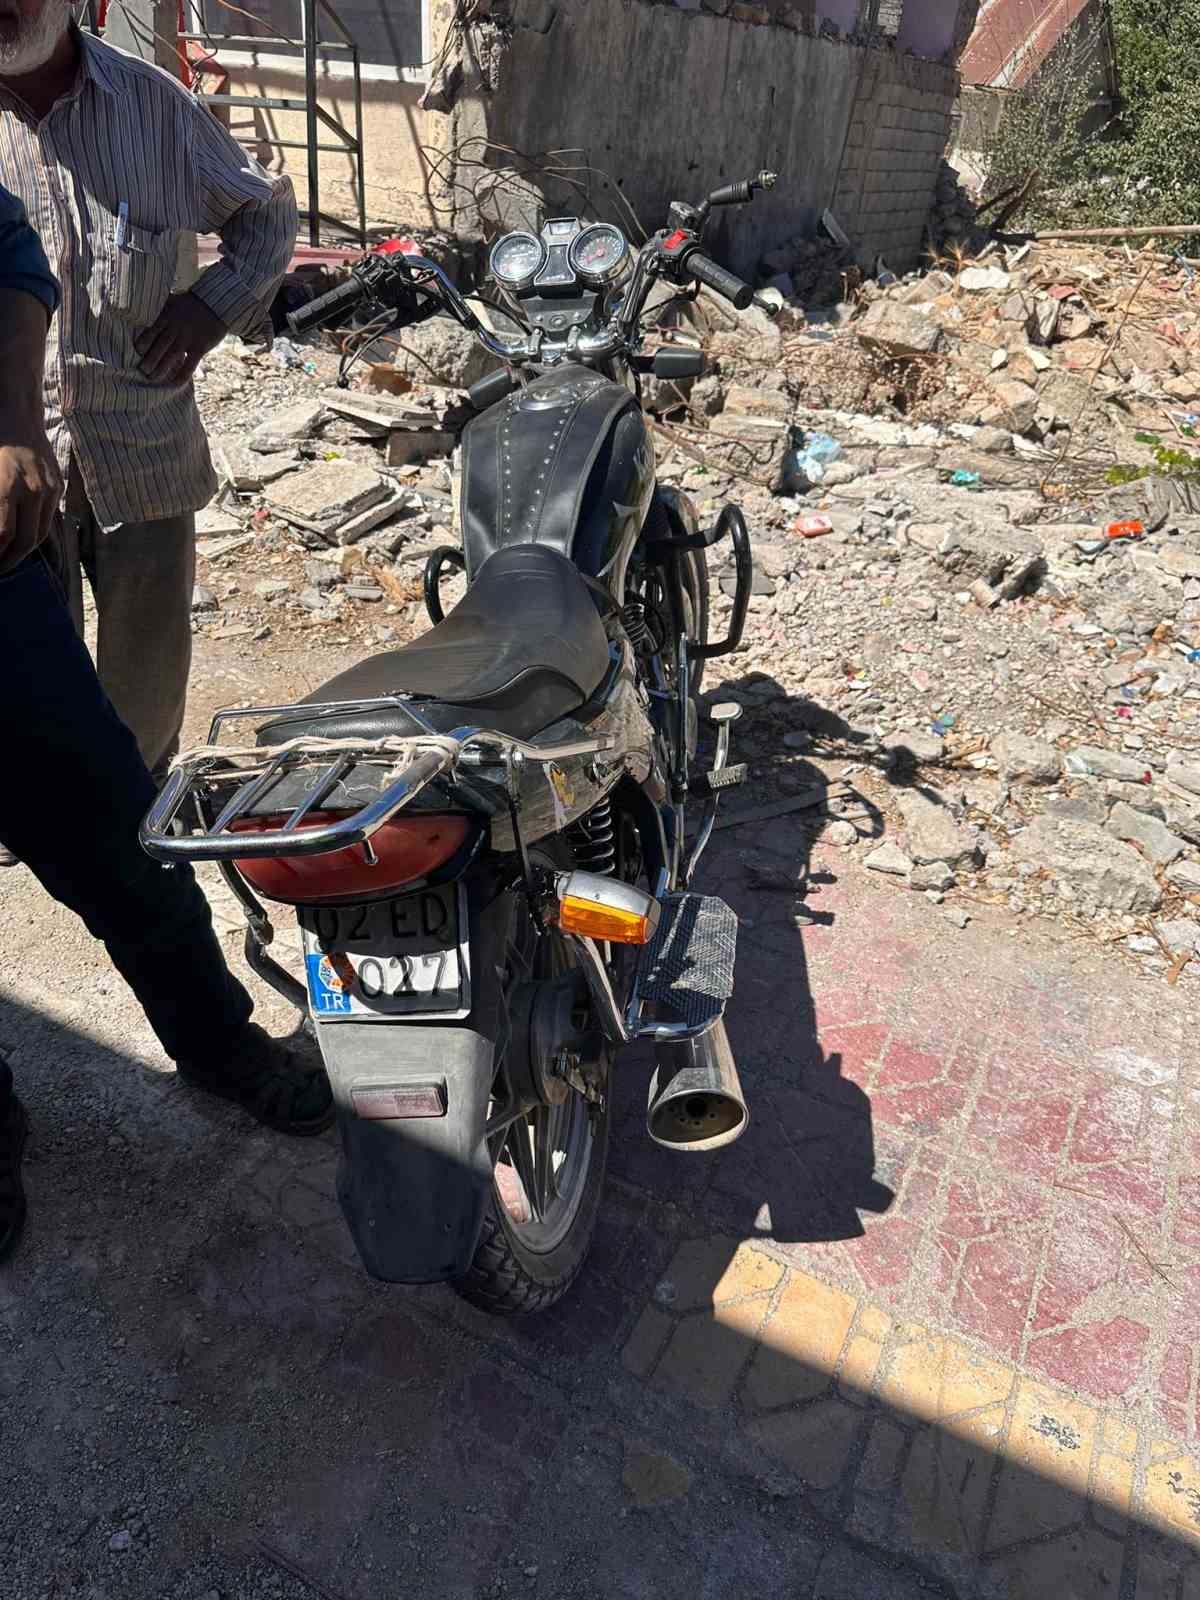 Malatya’da motosiklet devrildi 1 yaralı
